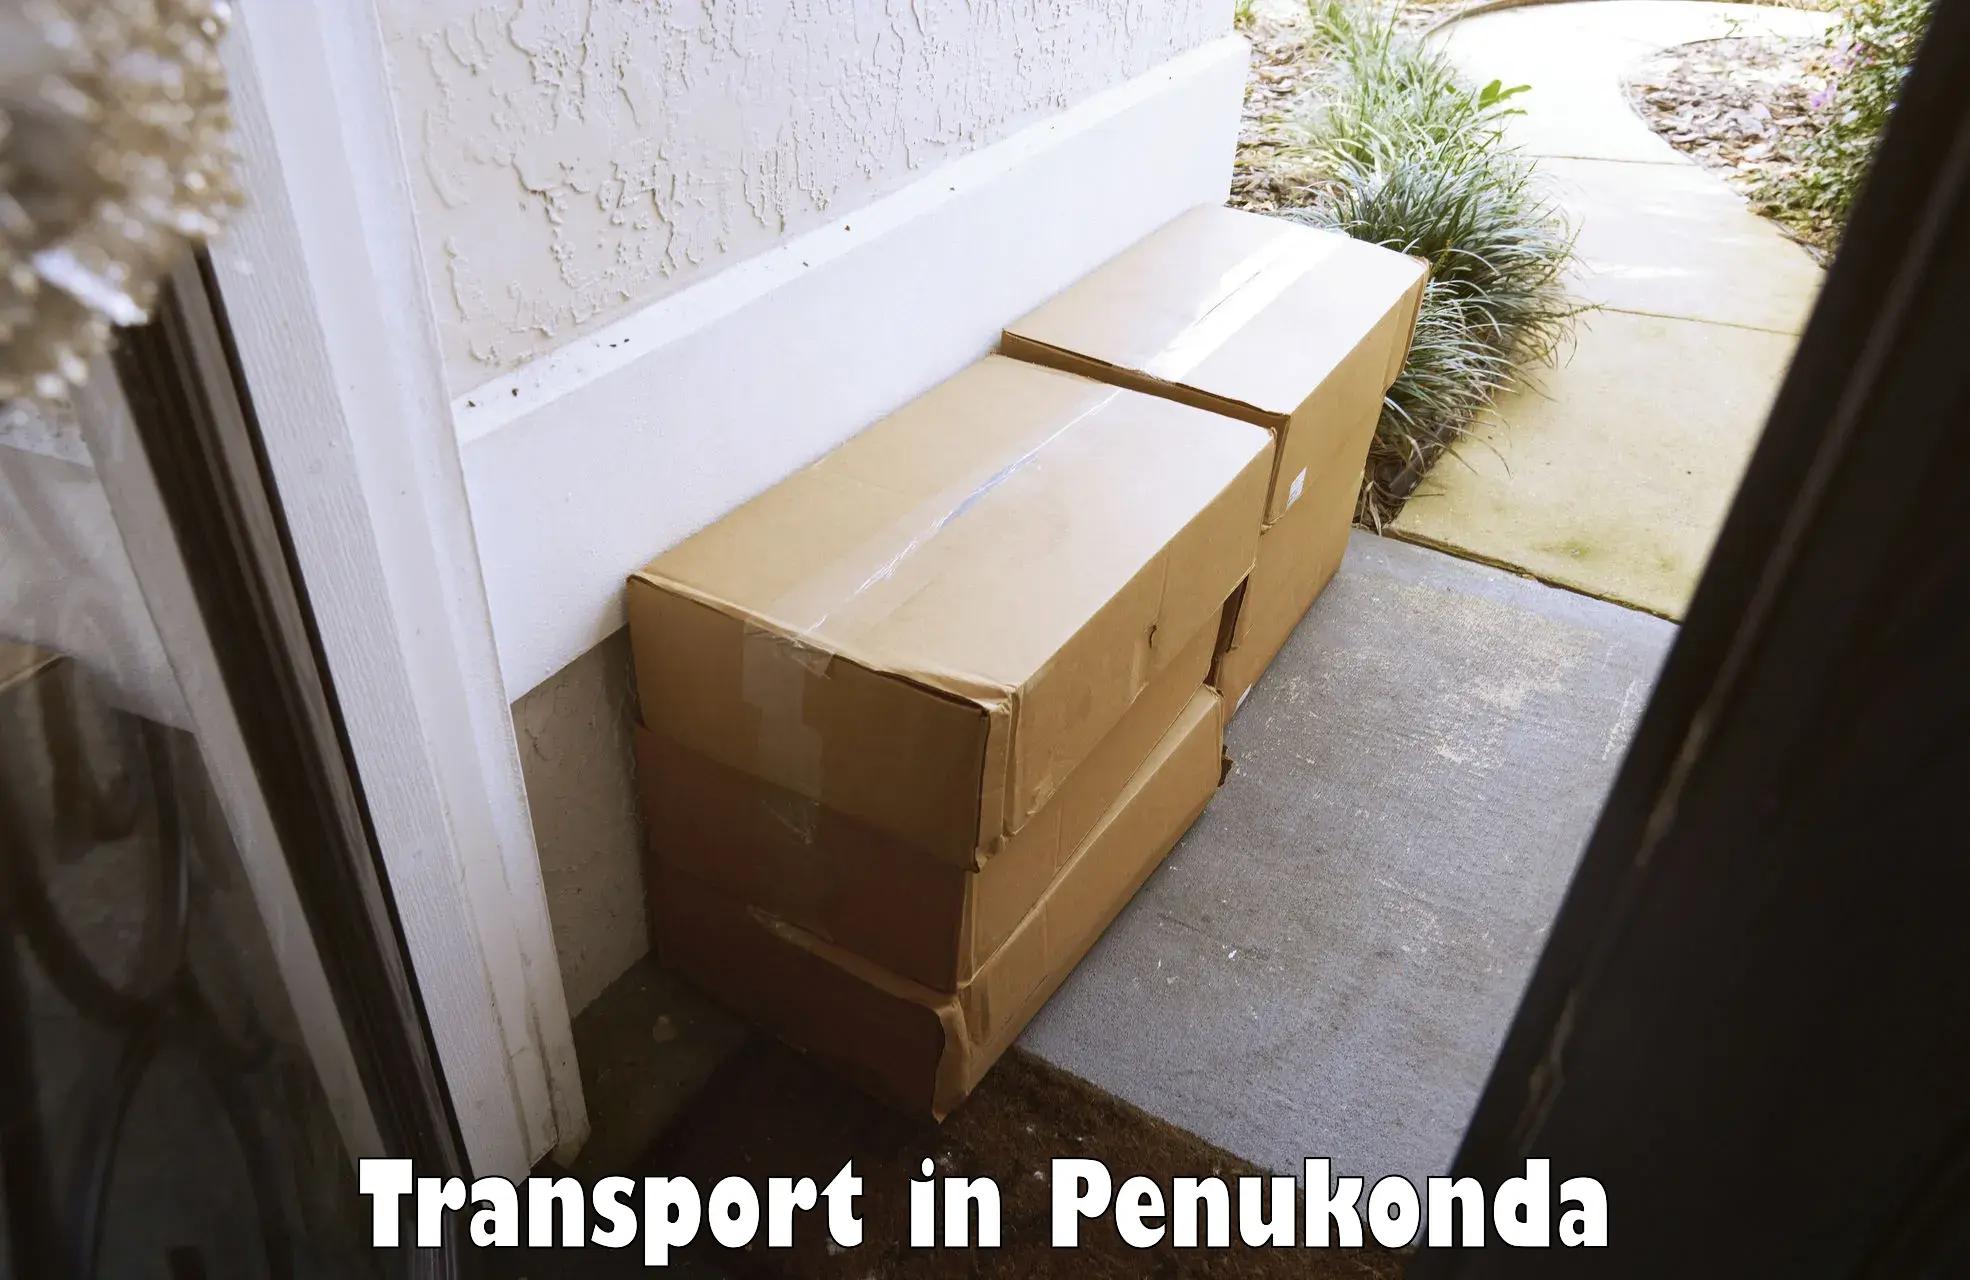 Daily transport service in Penukonda